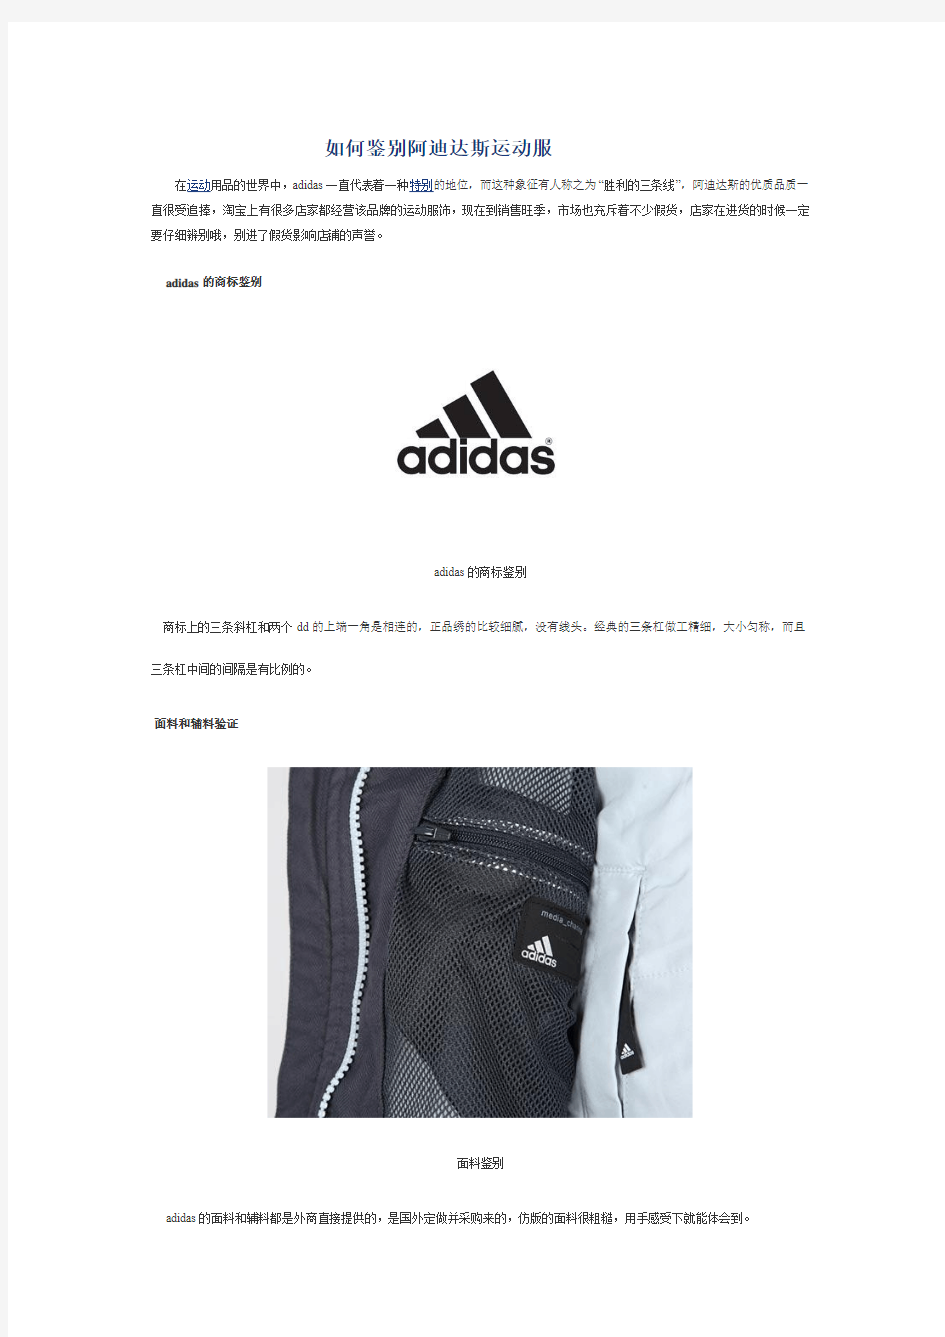 三叶草,Adidas鉴别